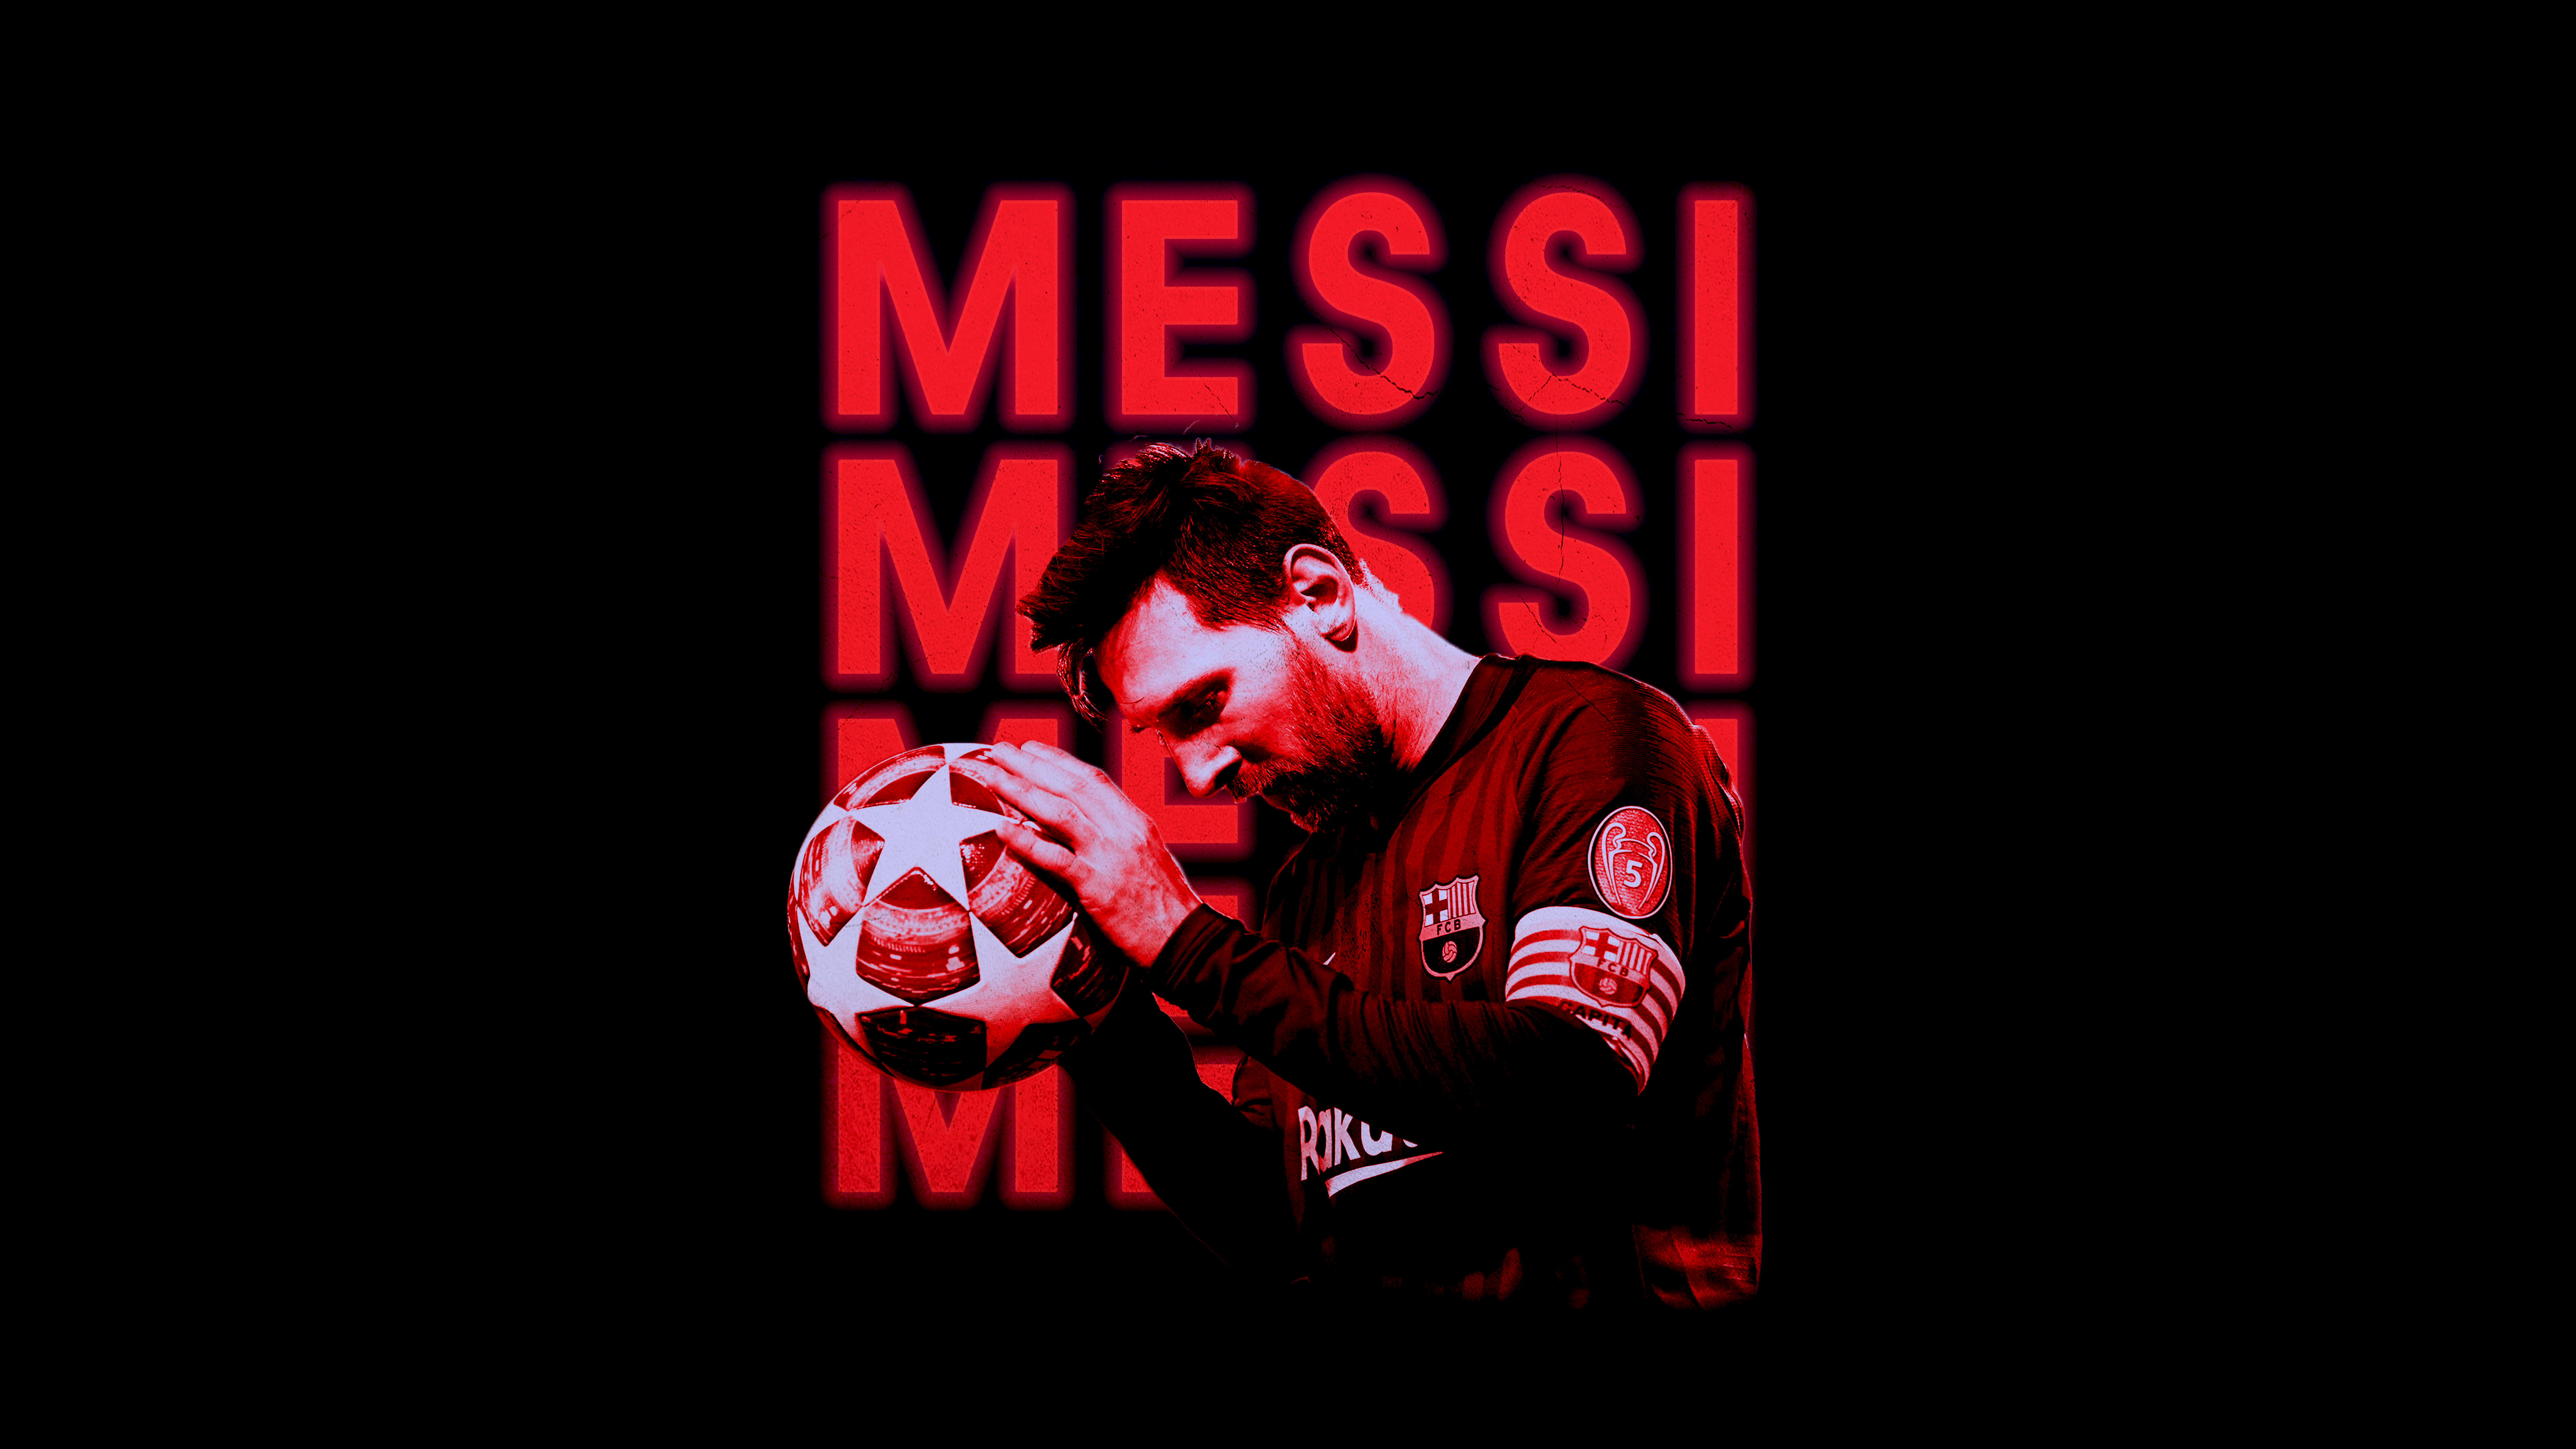 Bạn muốn những hình nền về Lionel Messi đẹp nhất? Hãy lựa chọn tại đây. Các hình nền này sẽ giúp cho bạn có nguồn cảm hứng mới mẻ trong cuộc sống.